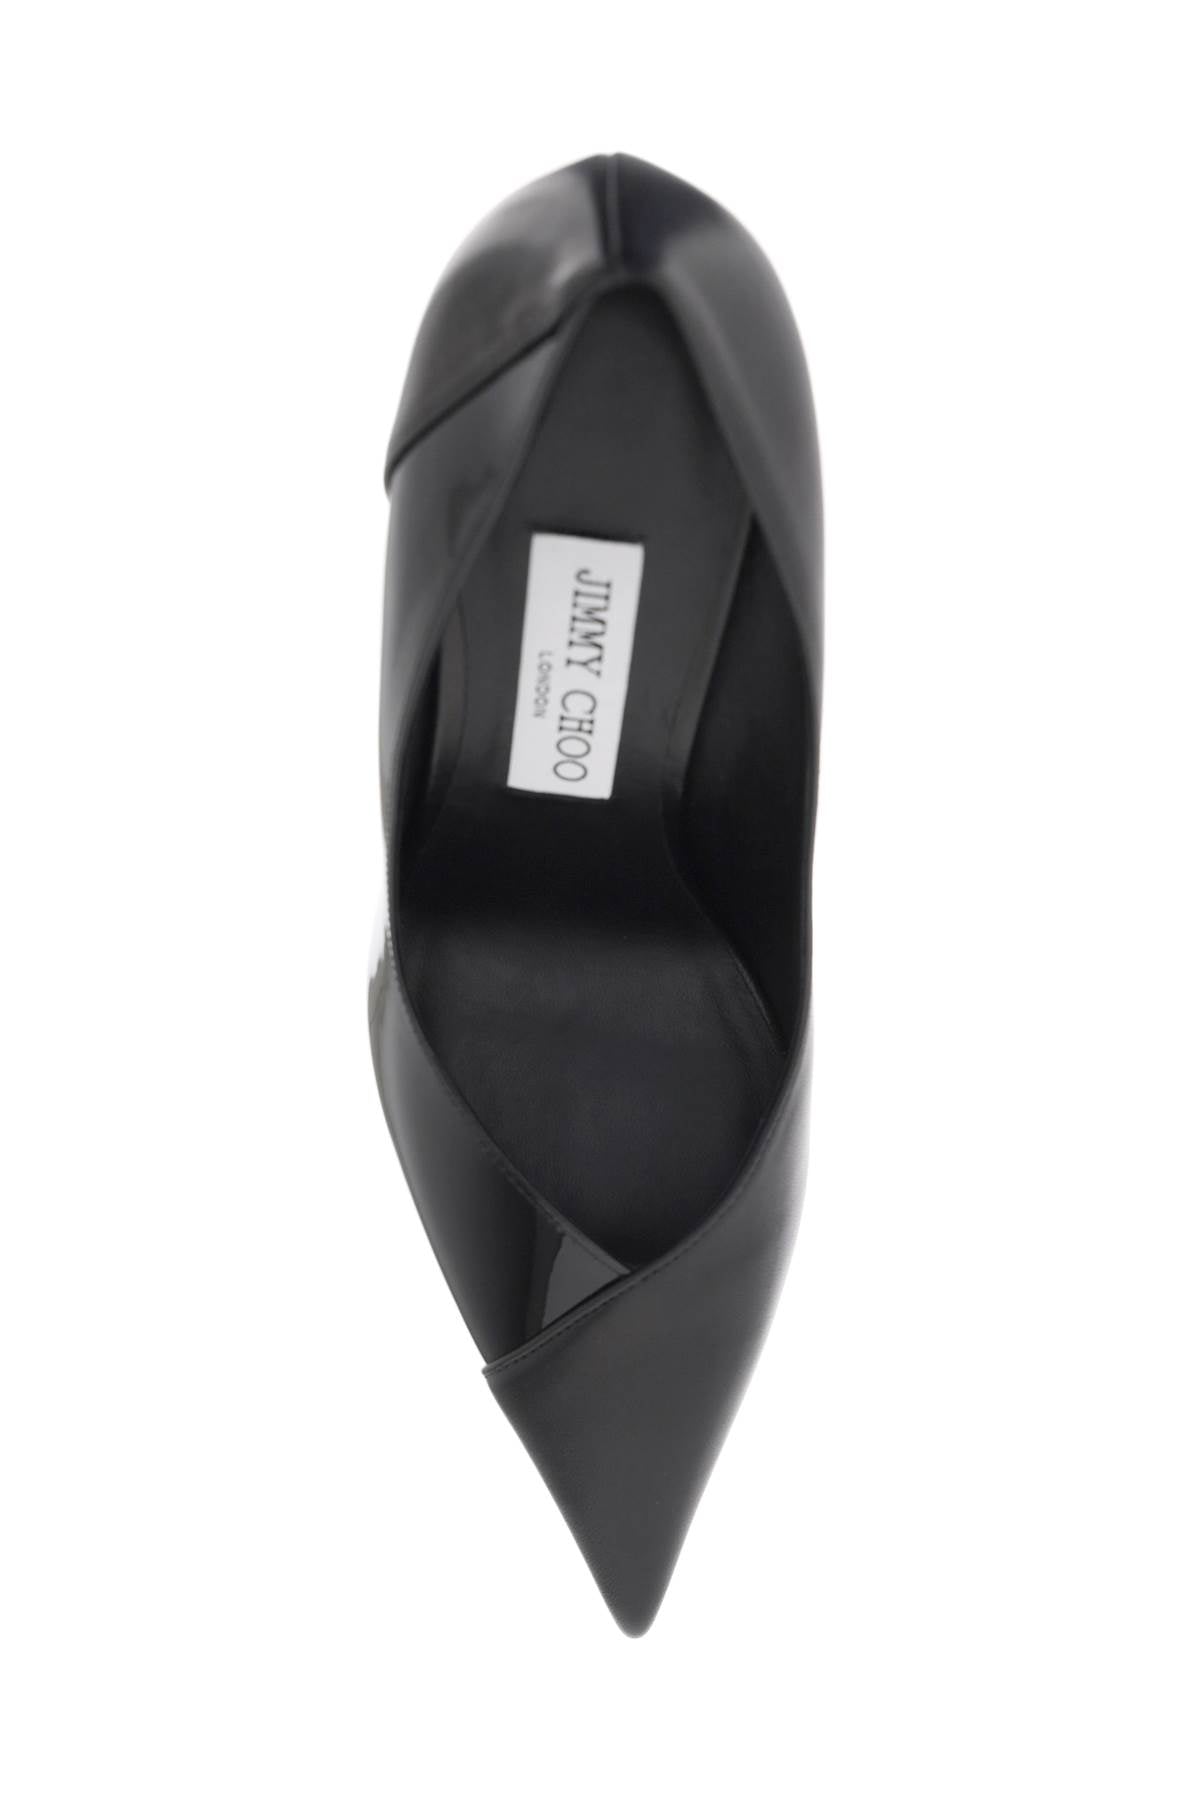 أنيقة وراقية: حذاء سوداء نسائية بأصابع مدببة لربيع وصيف 24